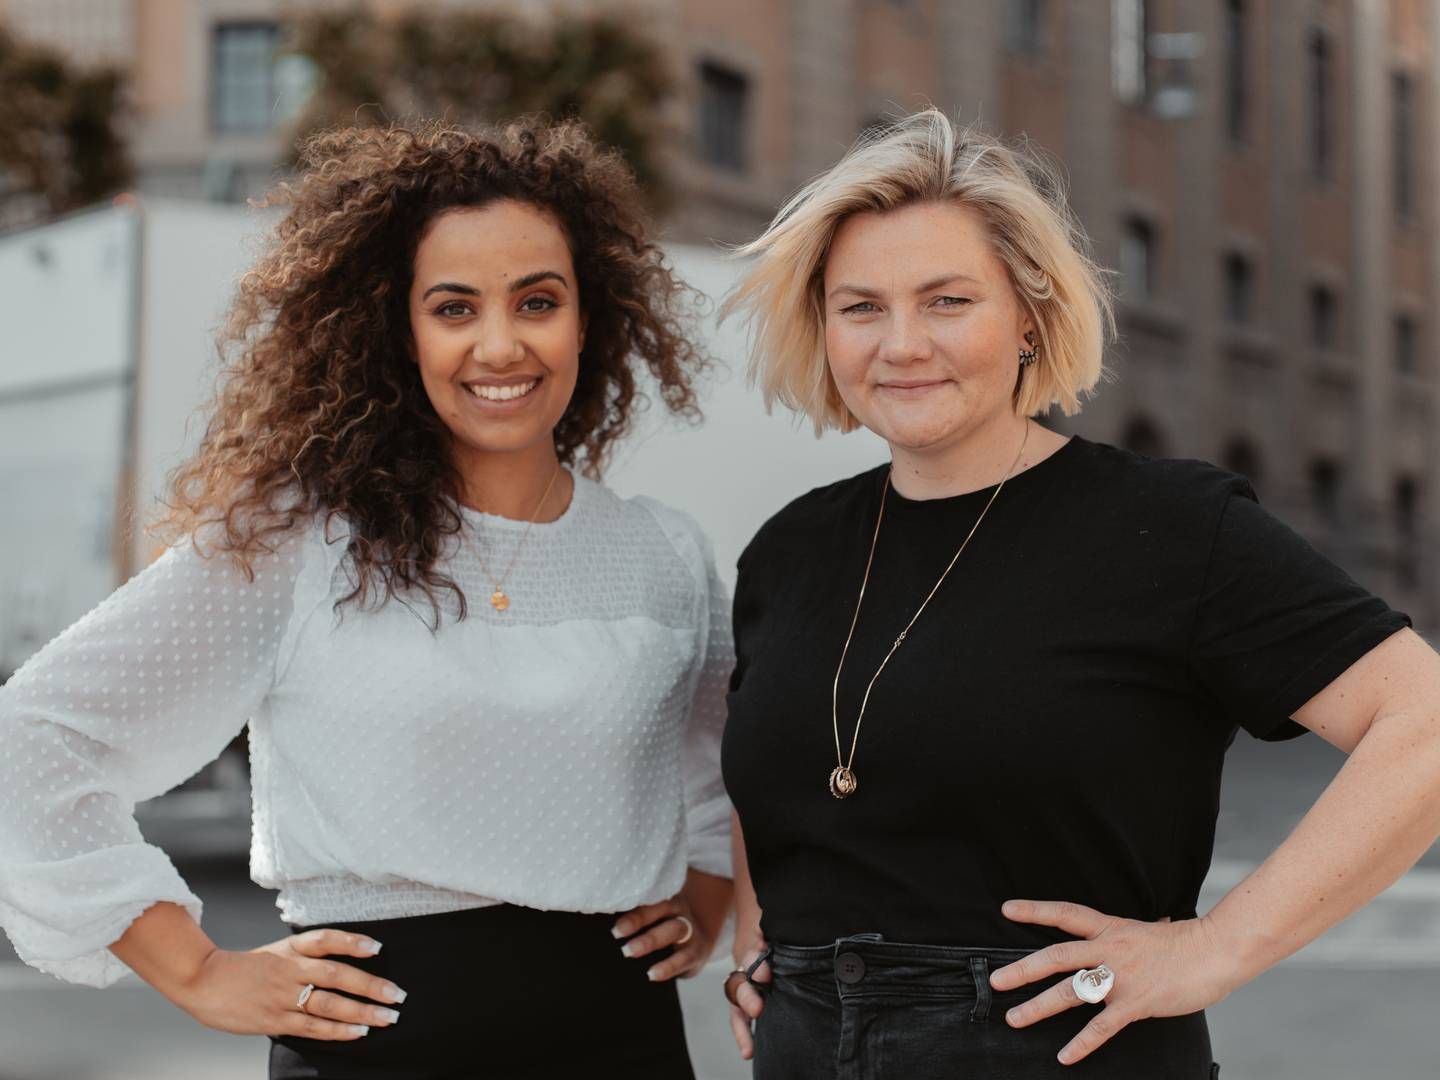 Nora Bavey og Thea Messel håber at være med til at bevise, at det kan betale sig at investere i underrepræsenterede grupper. | Foto: Unconventional Ventures / PR